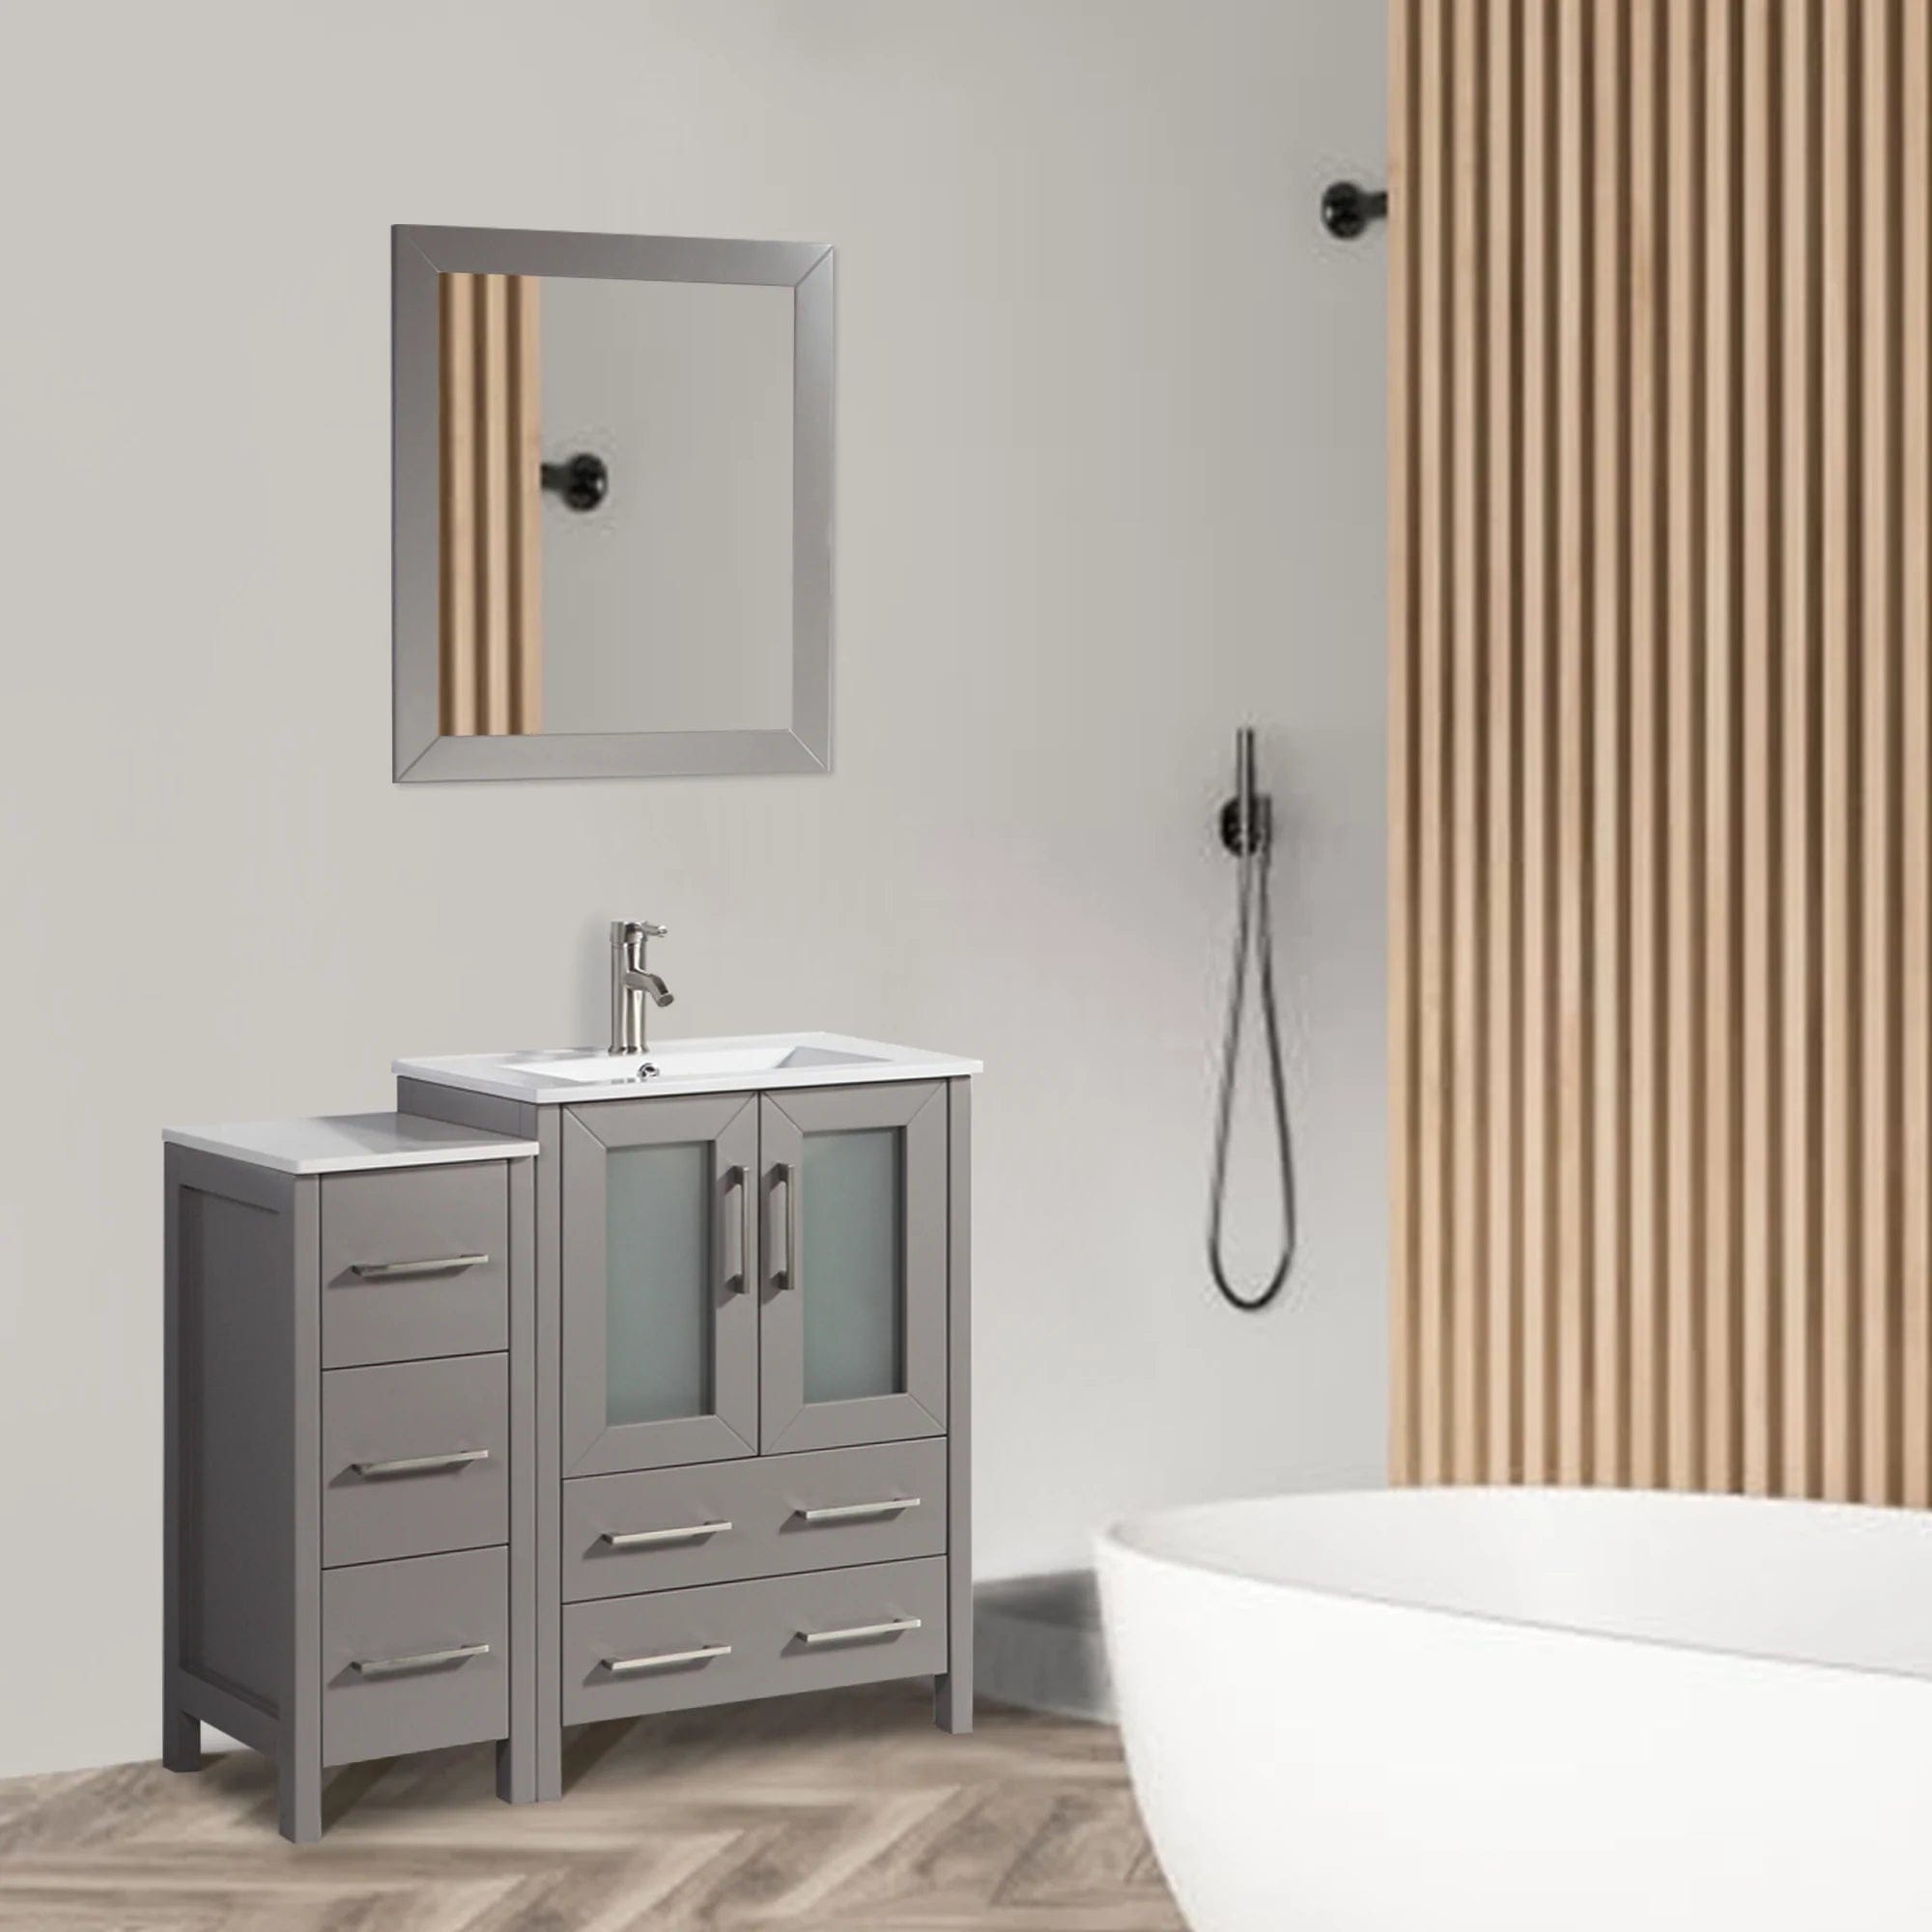 36 in. Single Sink Modern Bathroom Vanity Combo Set in Gray - Decohub Home